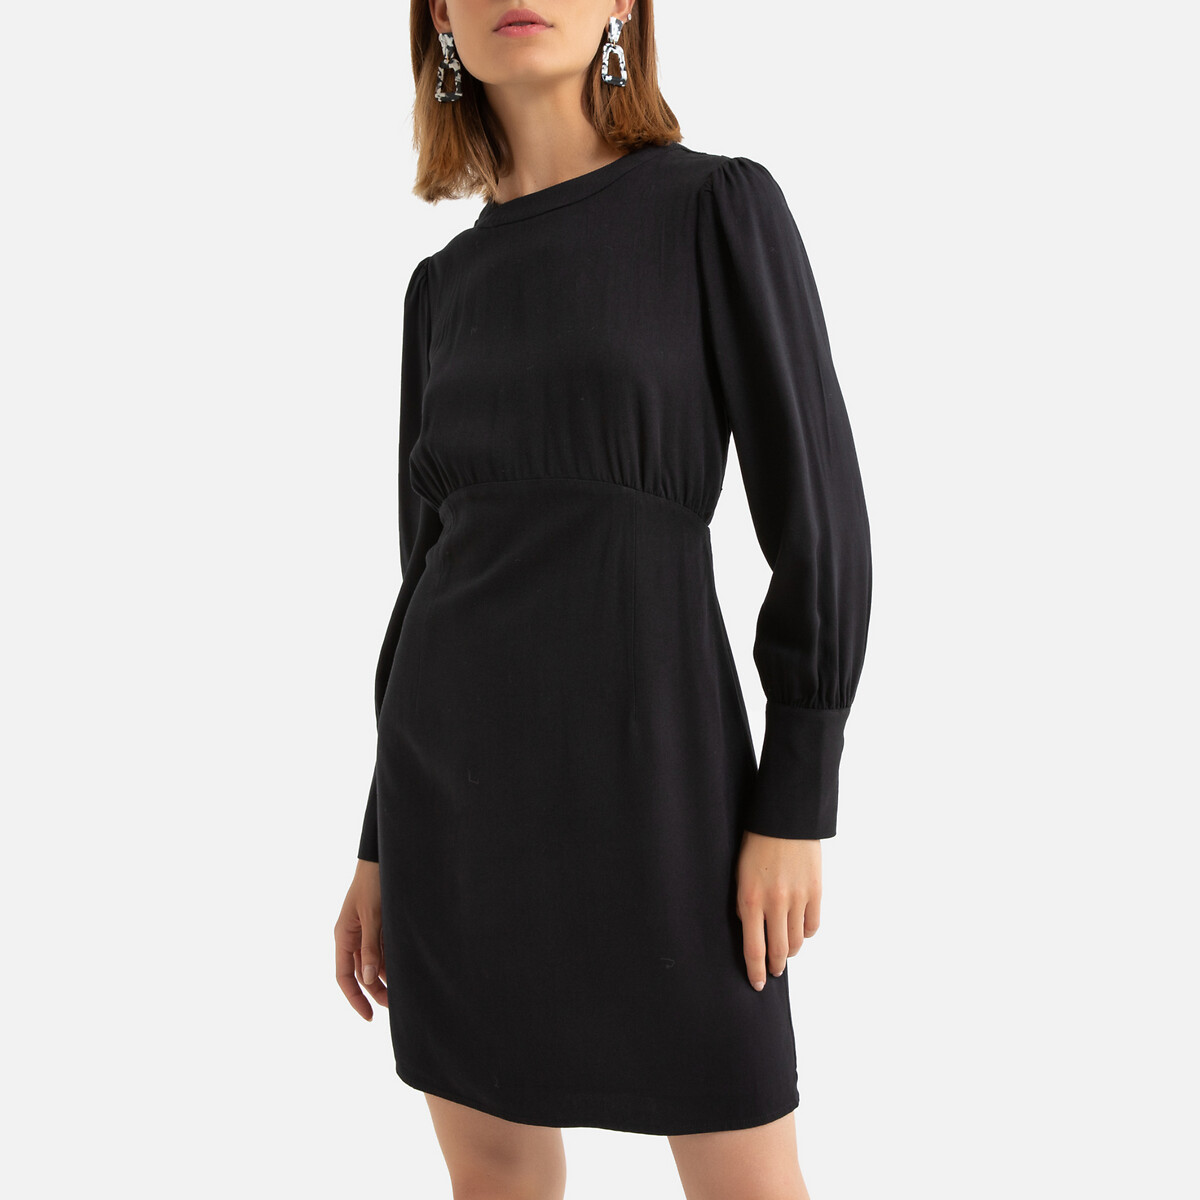 Платье La Redoute Короткое длинные рукава декольте сзади 1(S) черный, размер 1(S) Короткое длинные рукава декольте сзади 1(S) черный - фото 1